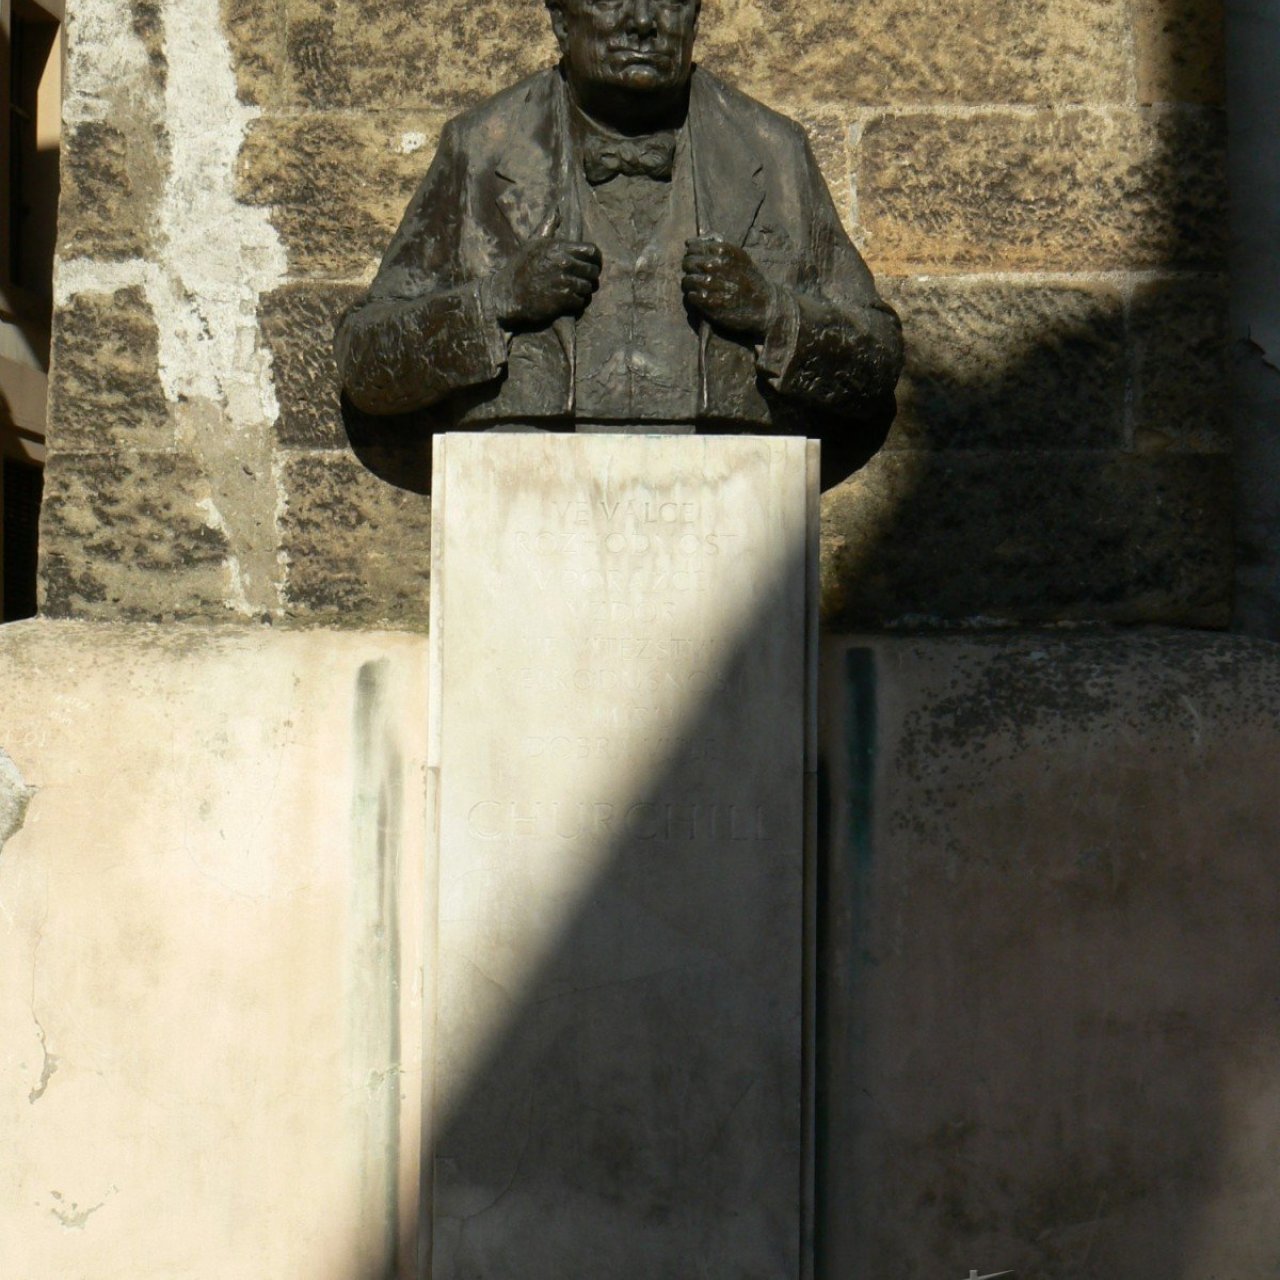 Praha 1 - Thunovská - busta Winston Churchill